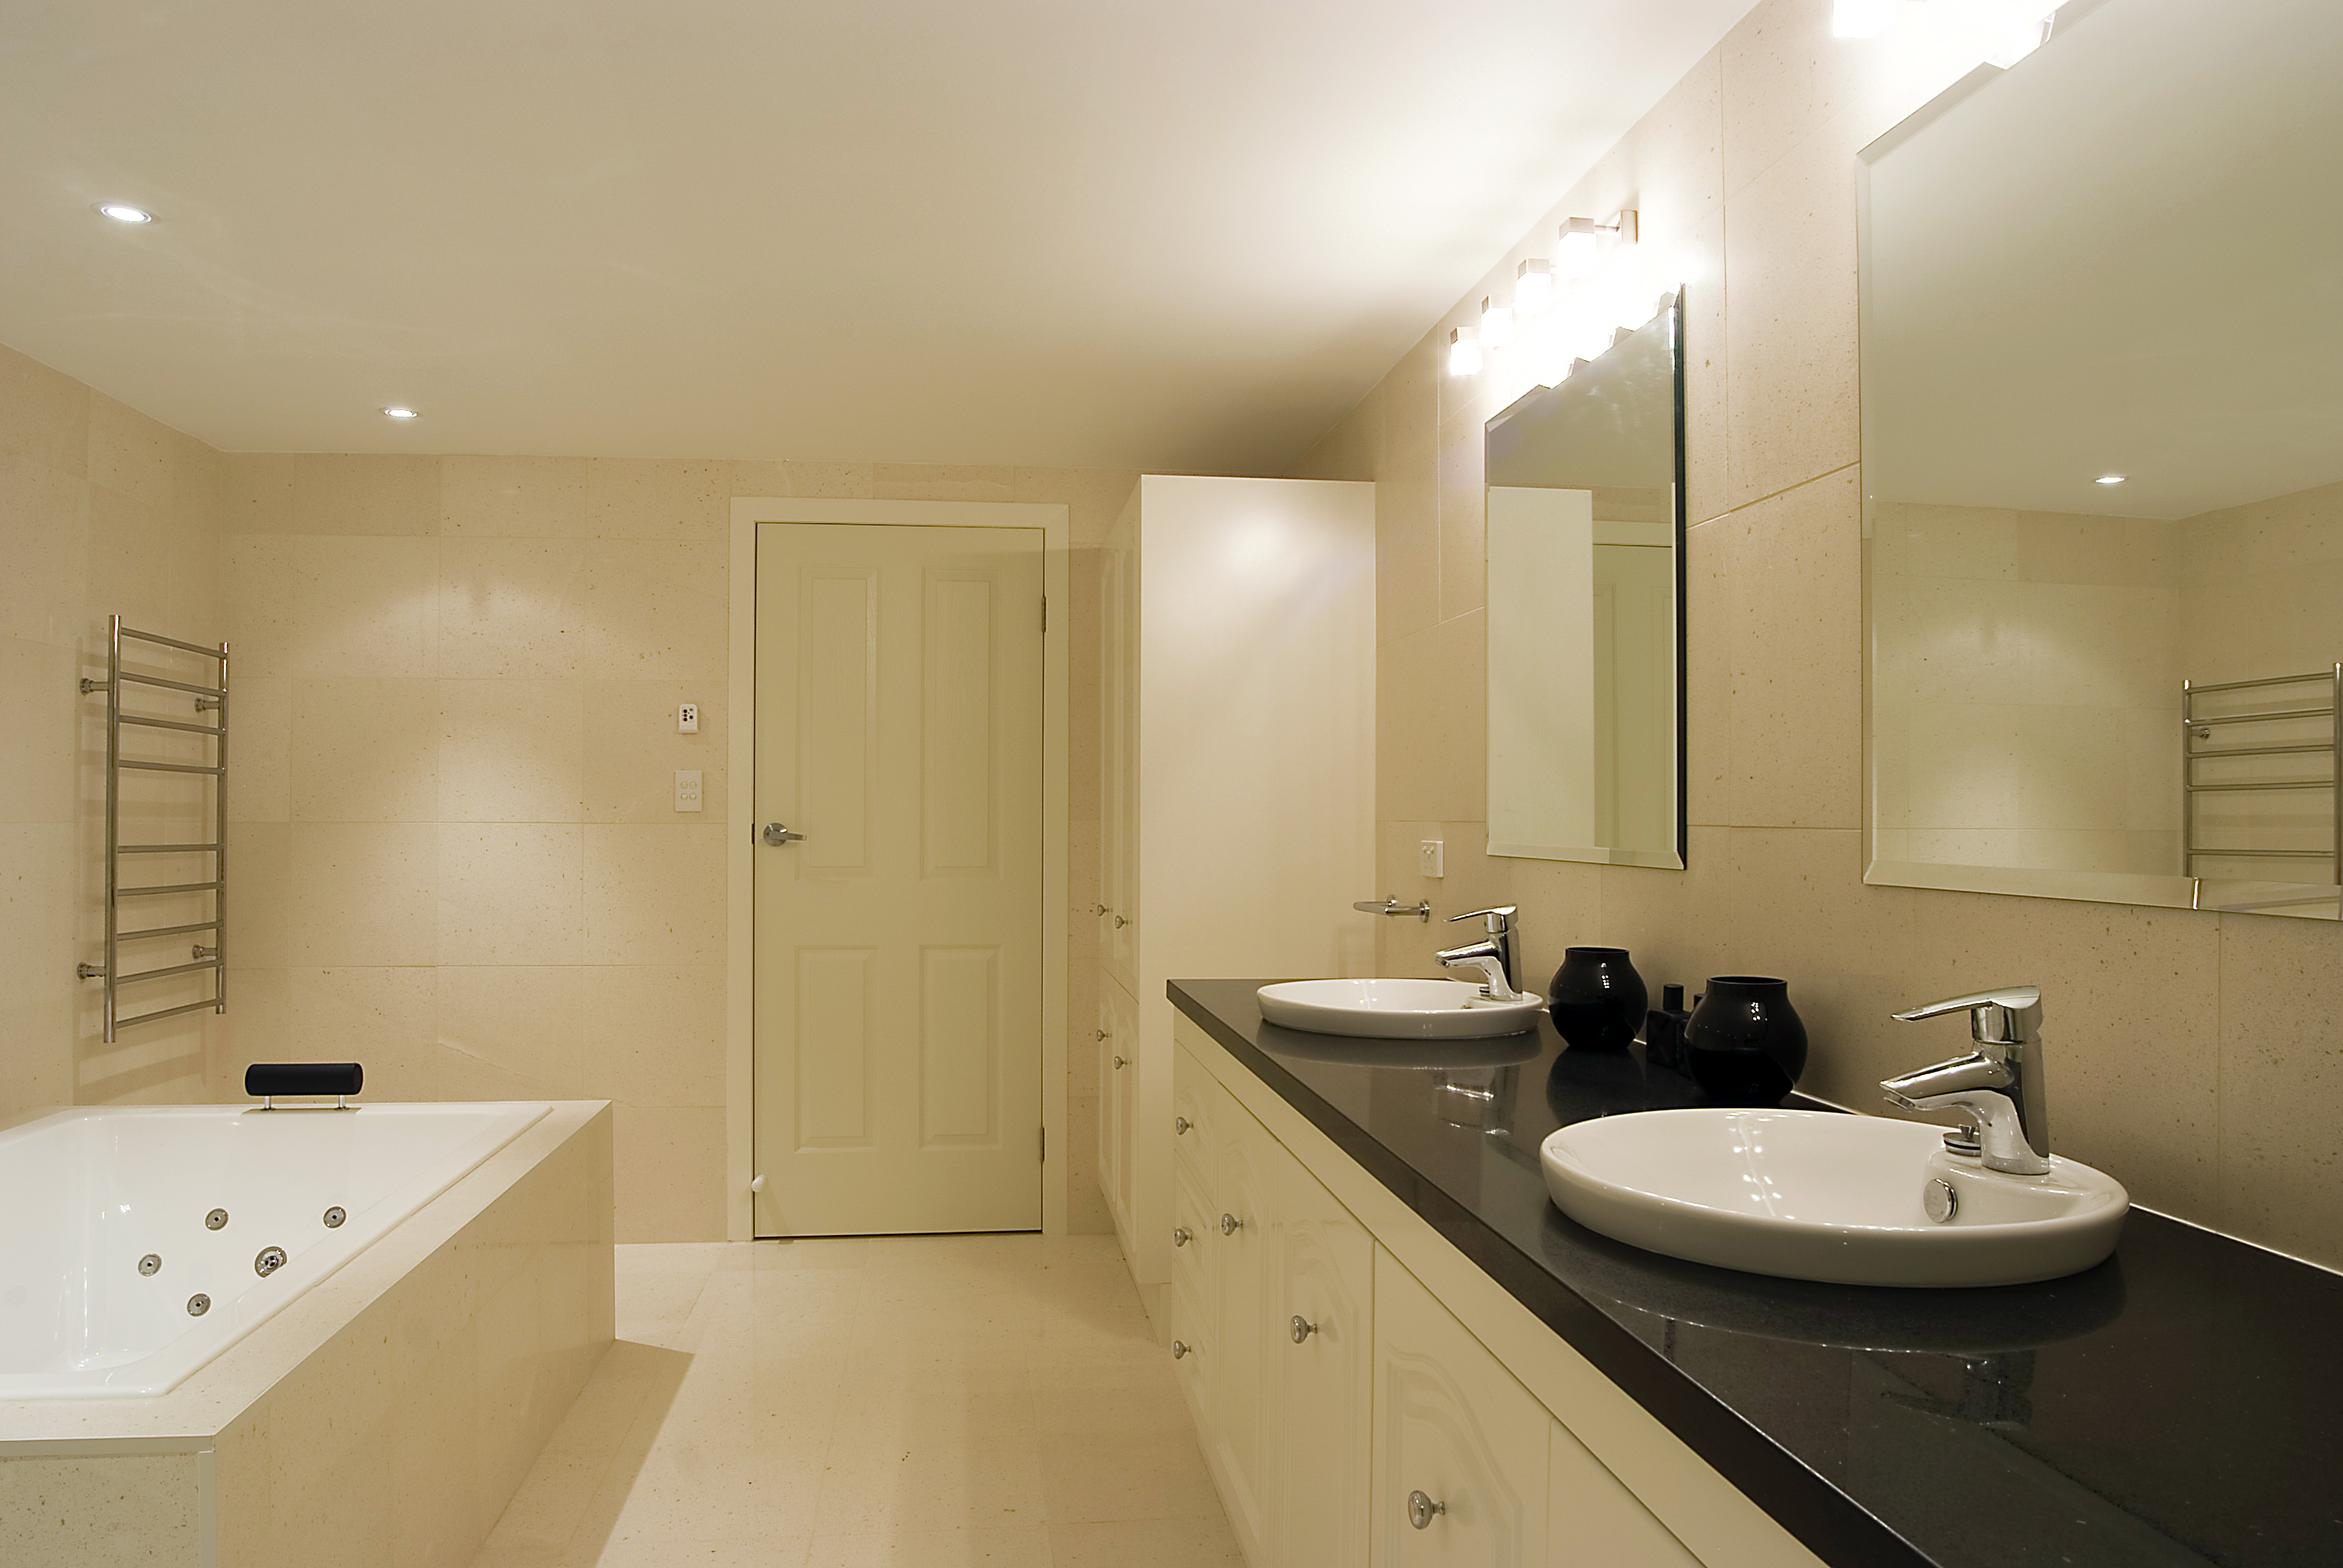 Carseldine bathroom double floor standing vanity